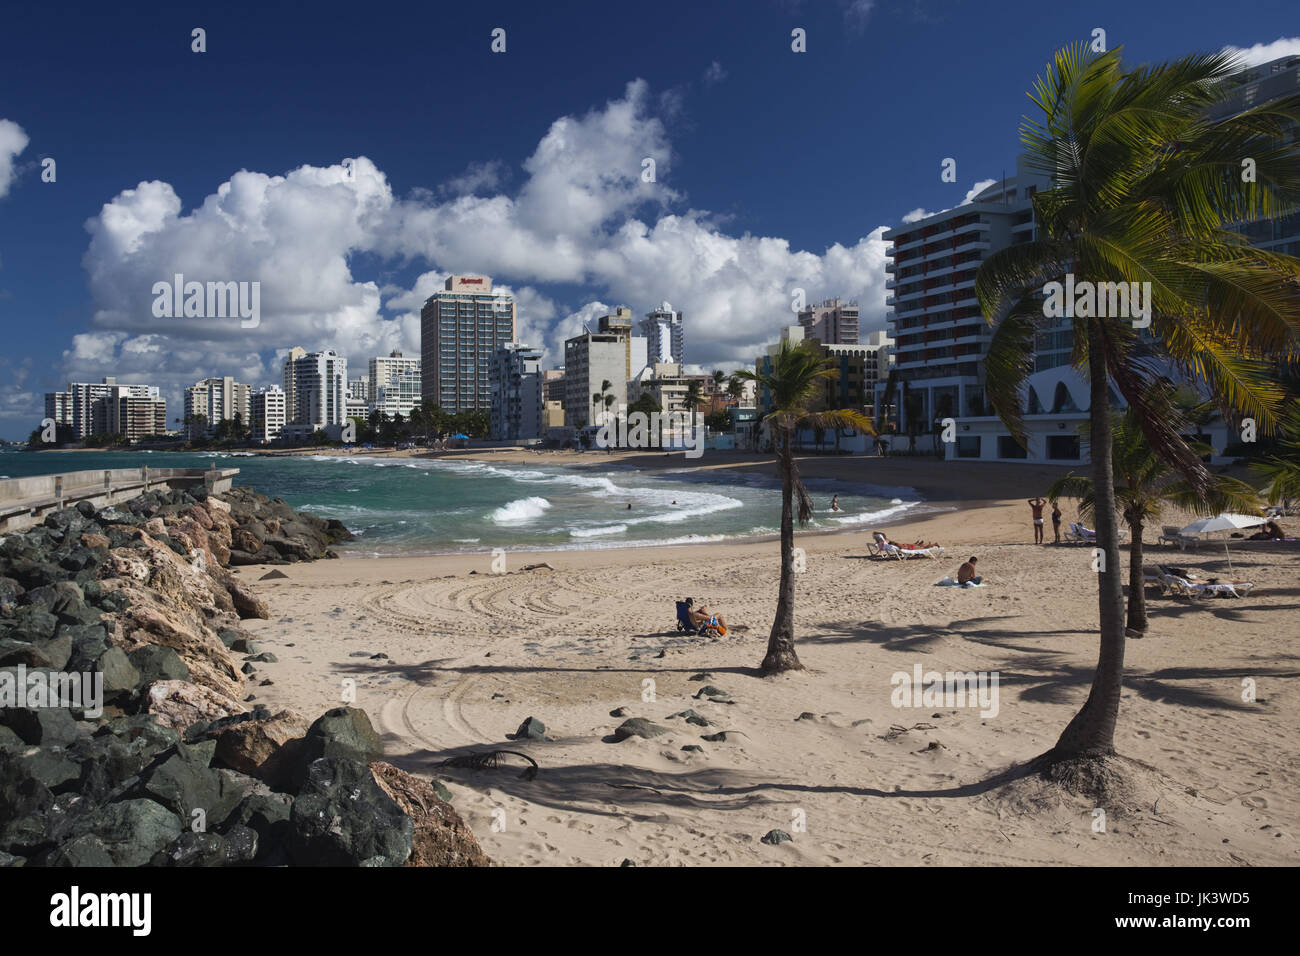 Puerto Rico, San Juan, Condado, Condado high rise buildings and Condado Beach Stock Photo